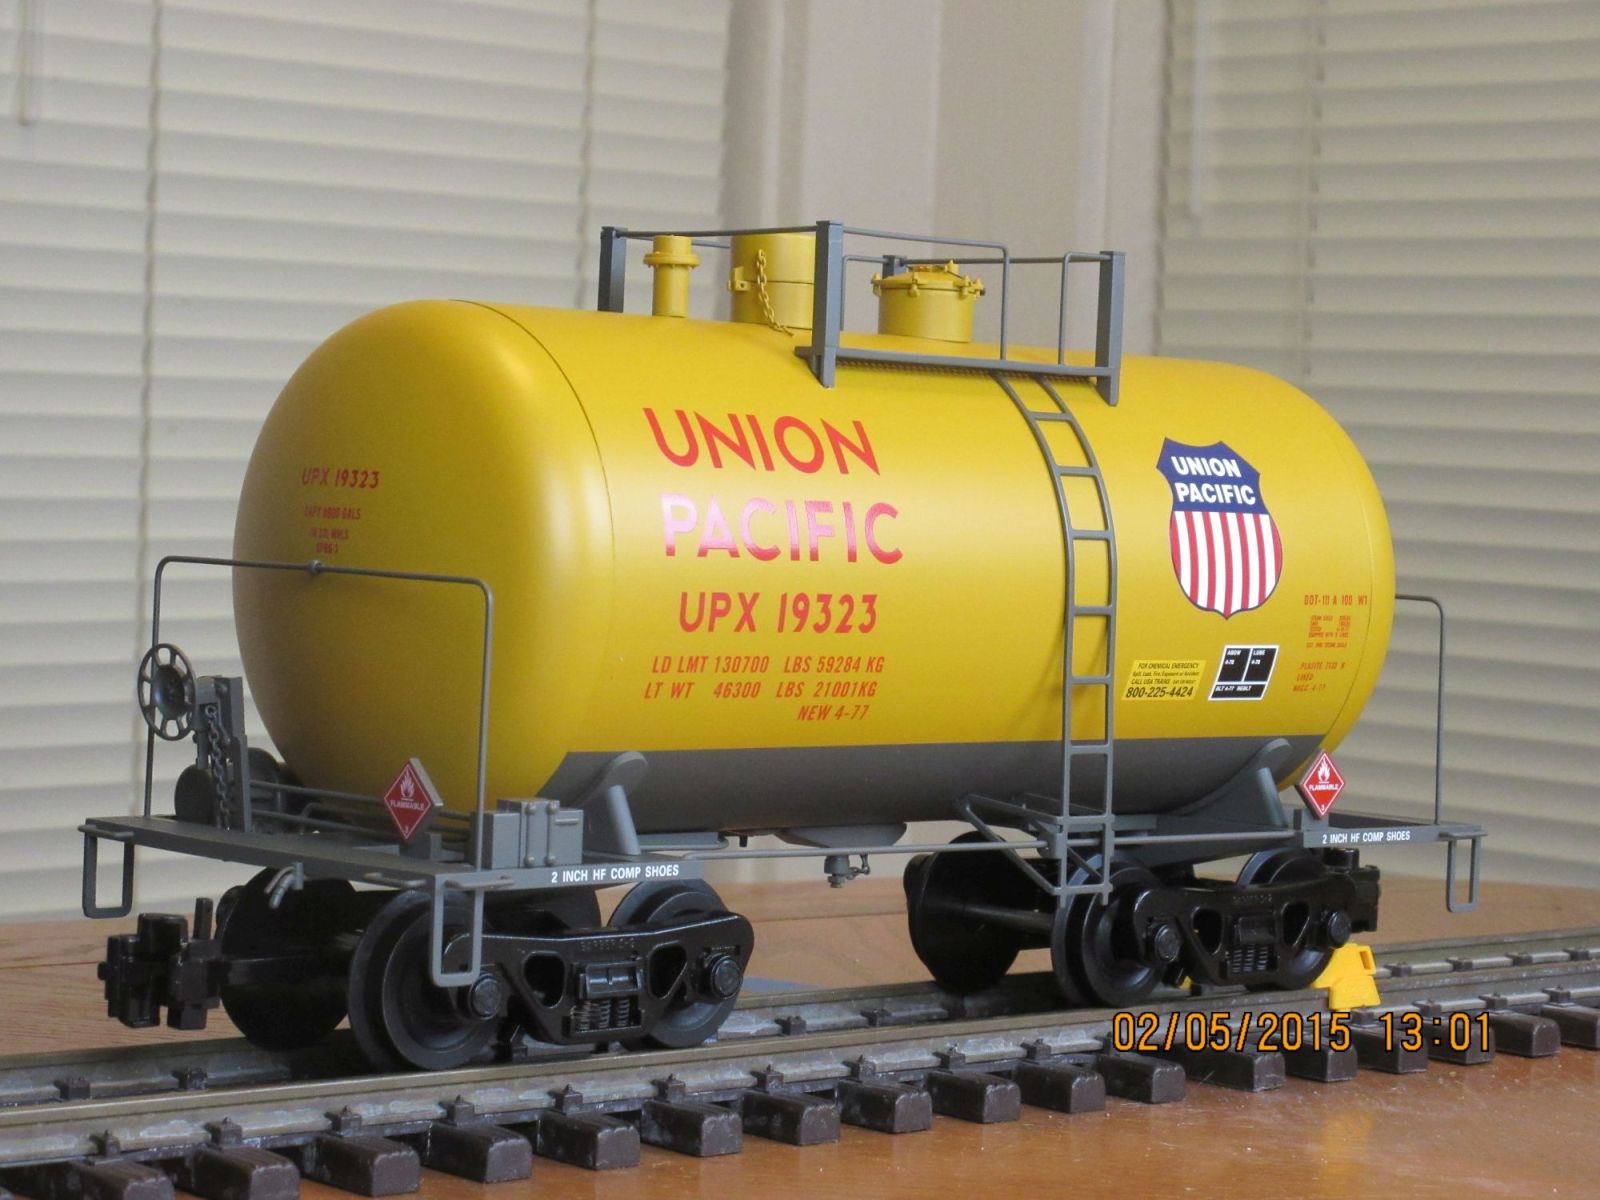 R15223 Union Pacific UPX 19323